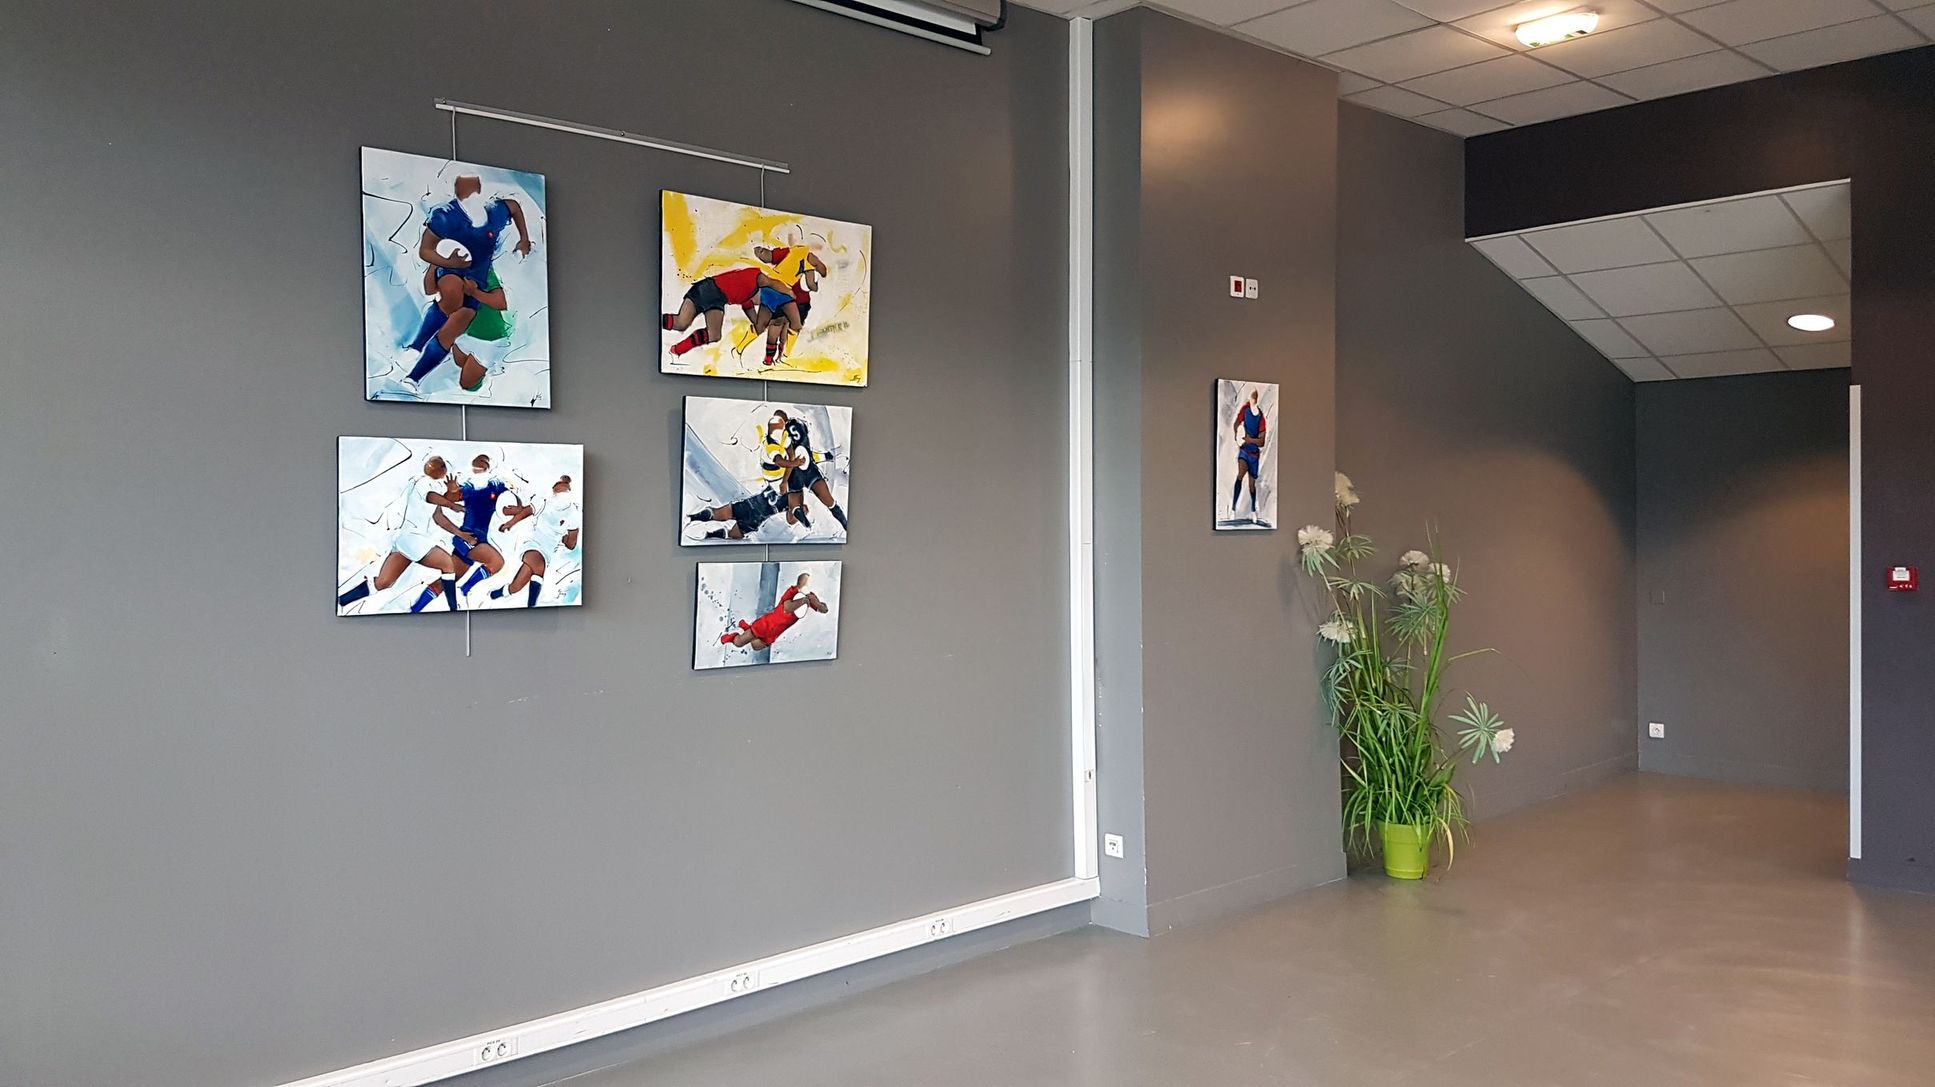 Exposition de peinture sur le rugby au stade des Alpes de grenoble à l'occasion du crunch France Angleterre du tournoi des 6 nations 2018 féminin